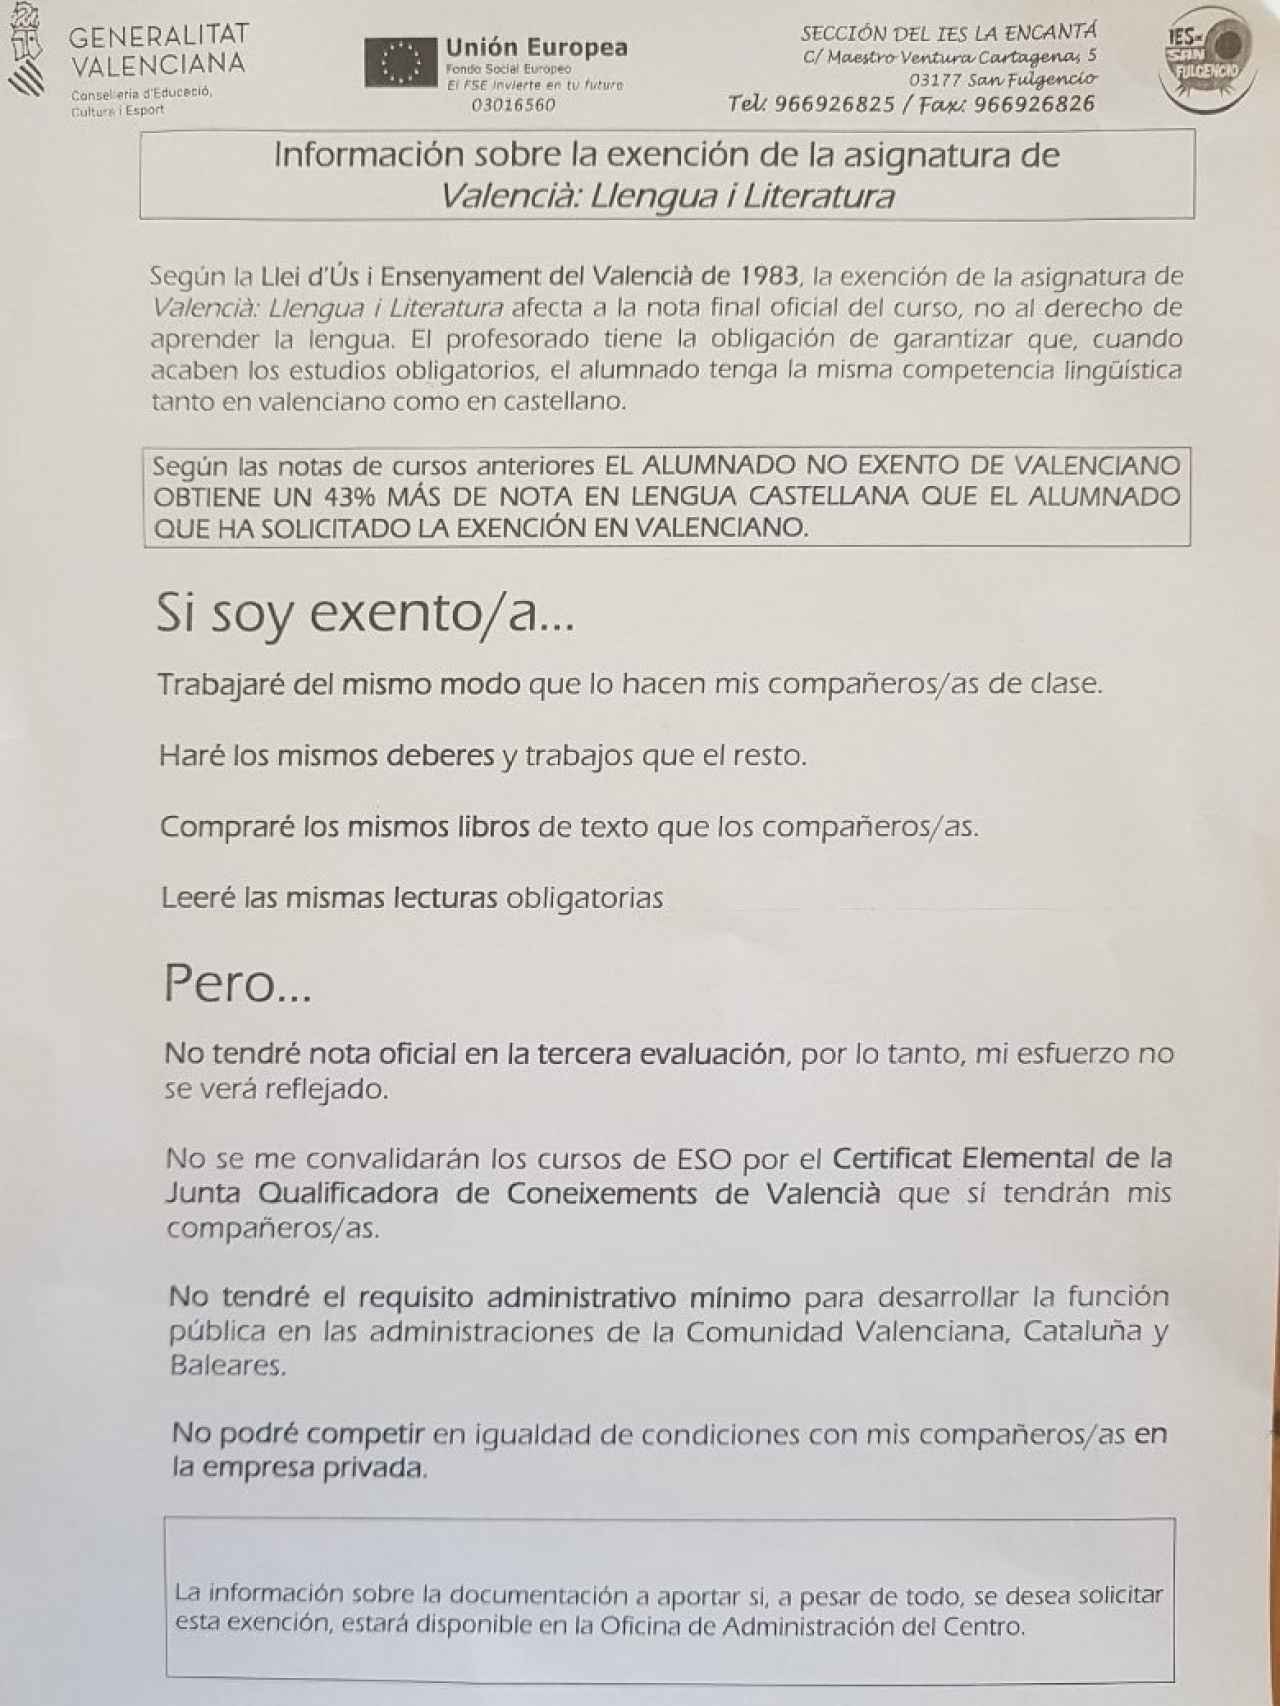 Carta de la Consejería de Educación valenciana a las familias del IES La Encantá en San Fulgencio (Alicante) que han solicitado la exención del valenciano.